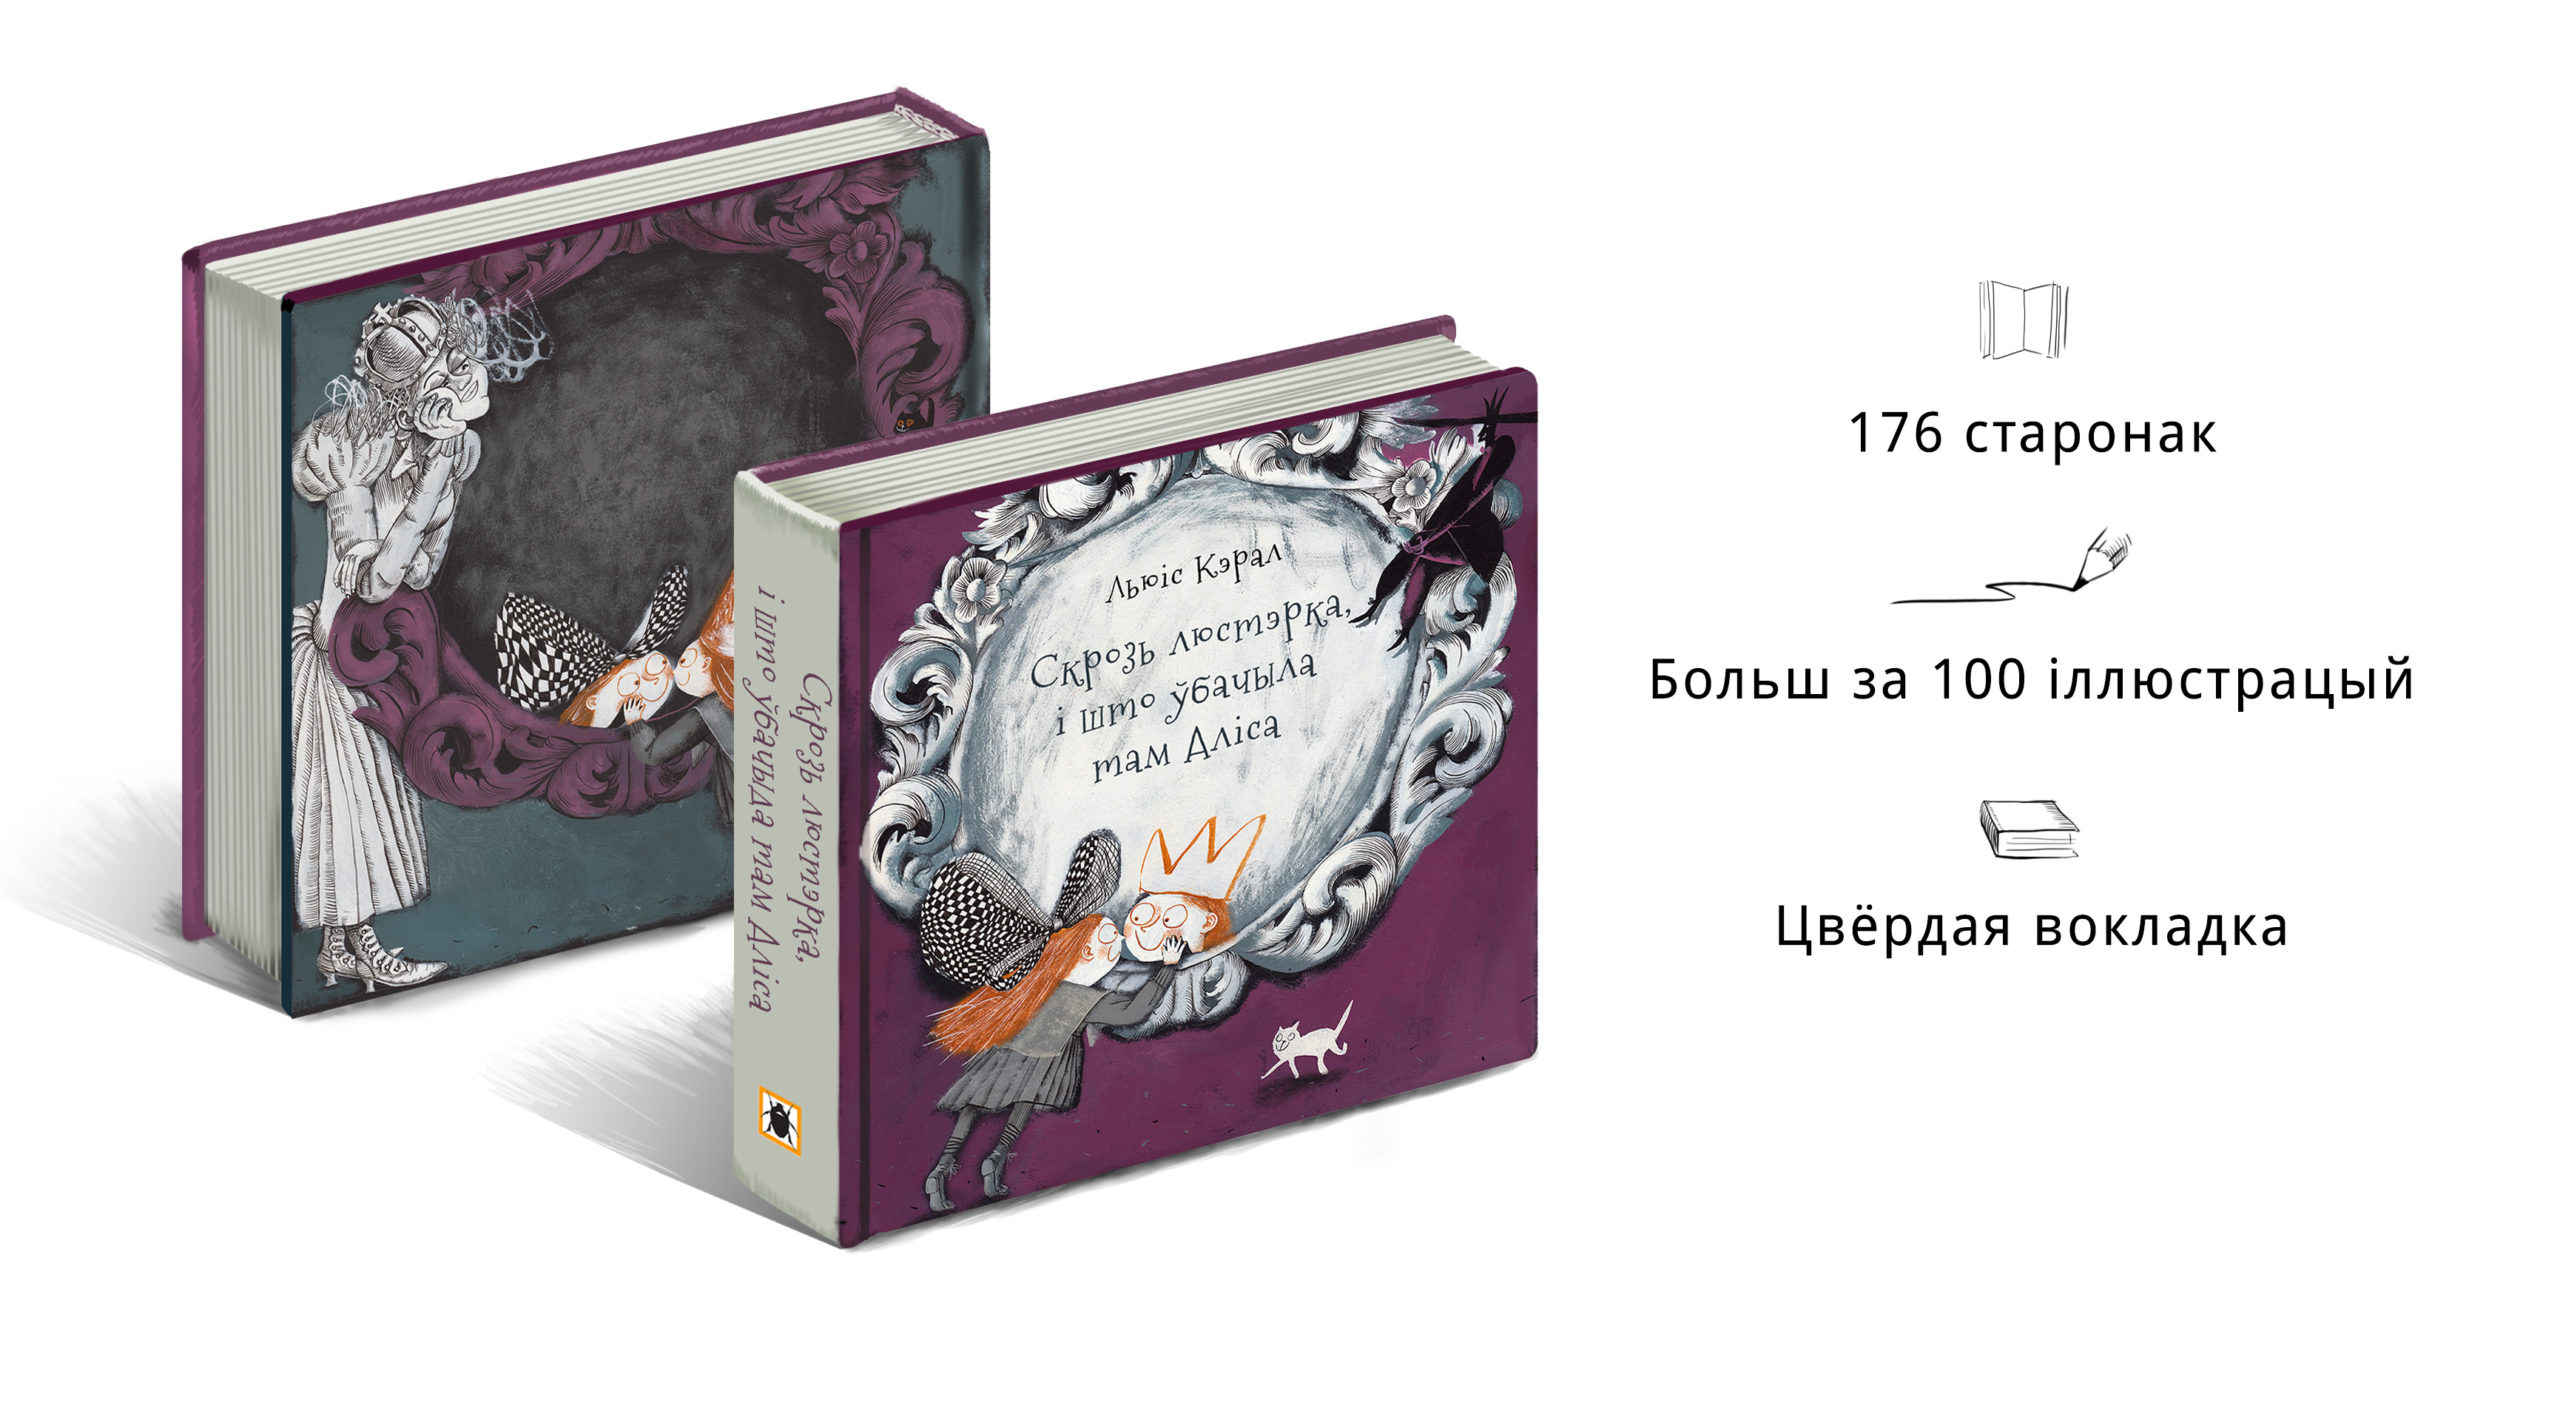 Першае беларускае выданне казкі “Скрозь люстэрка, і што ўбачыла там Аліса”